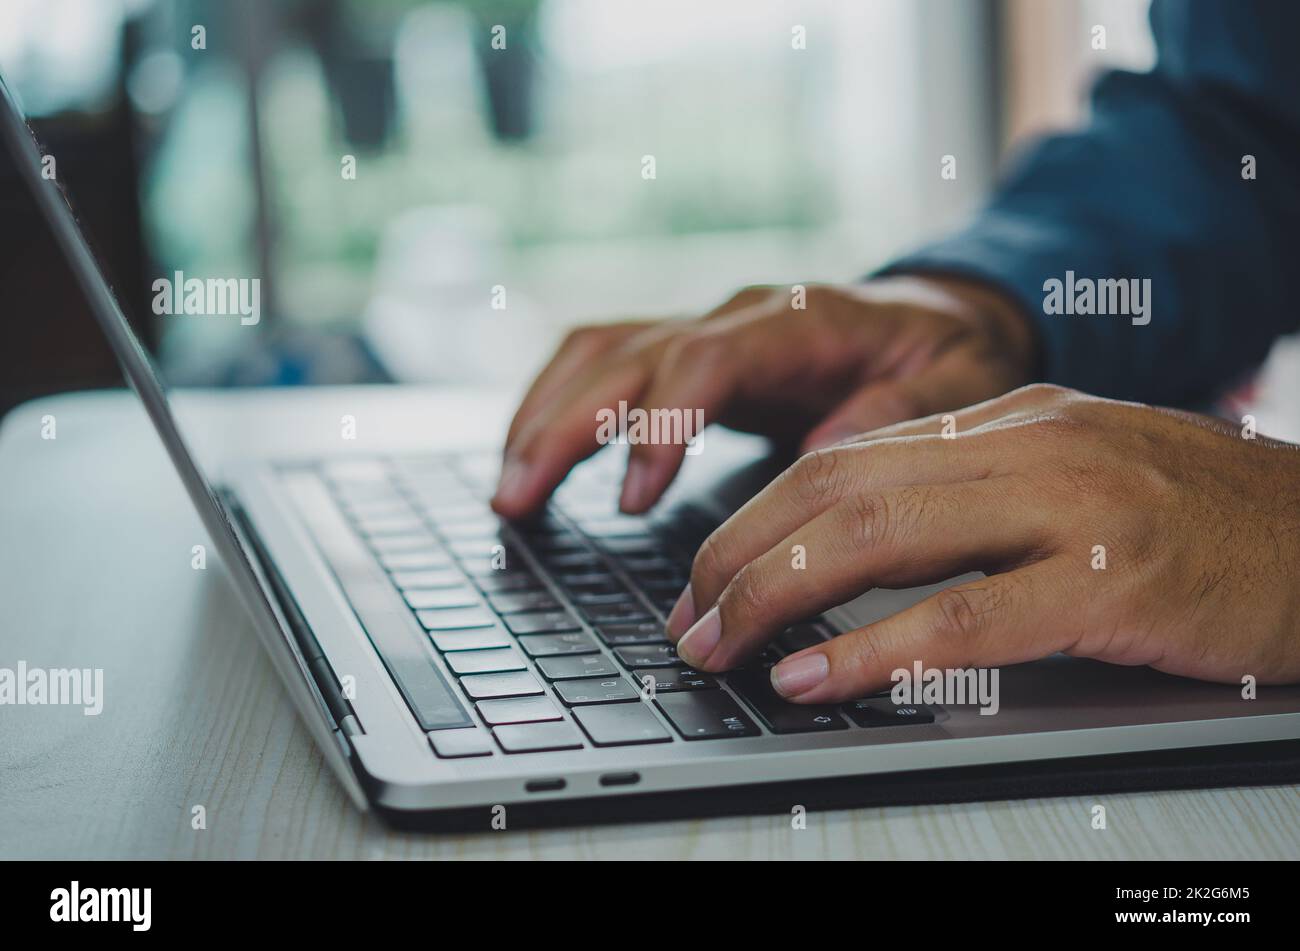 uomo che usa un computer portatile che cerca in internet, invia sms, usa sms o online banking. Foto Stock